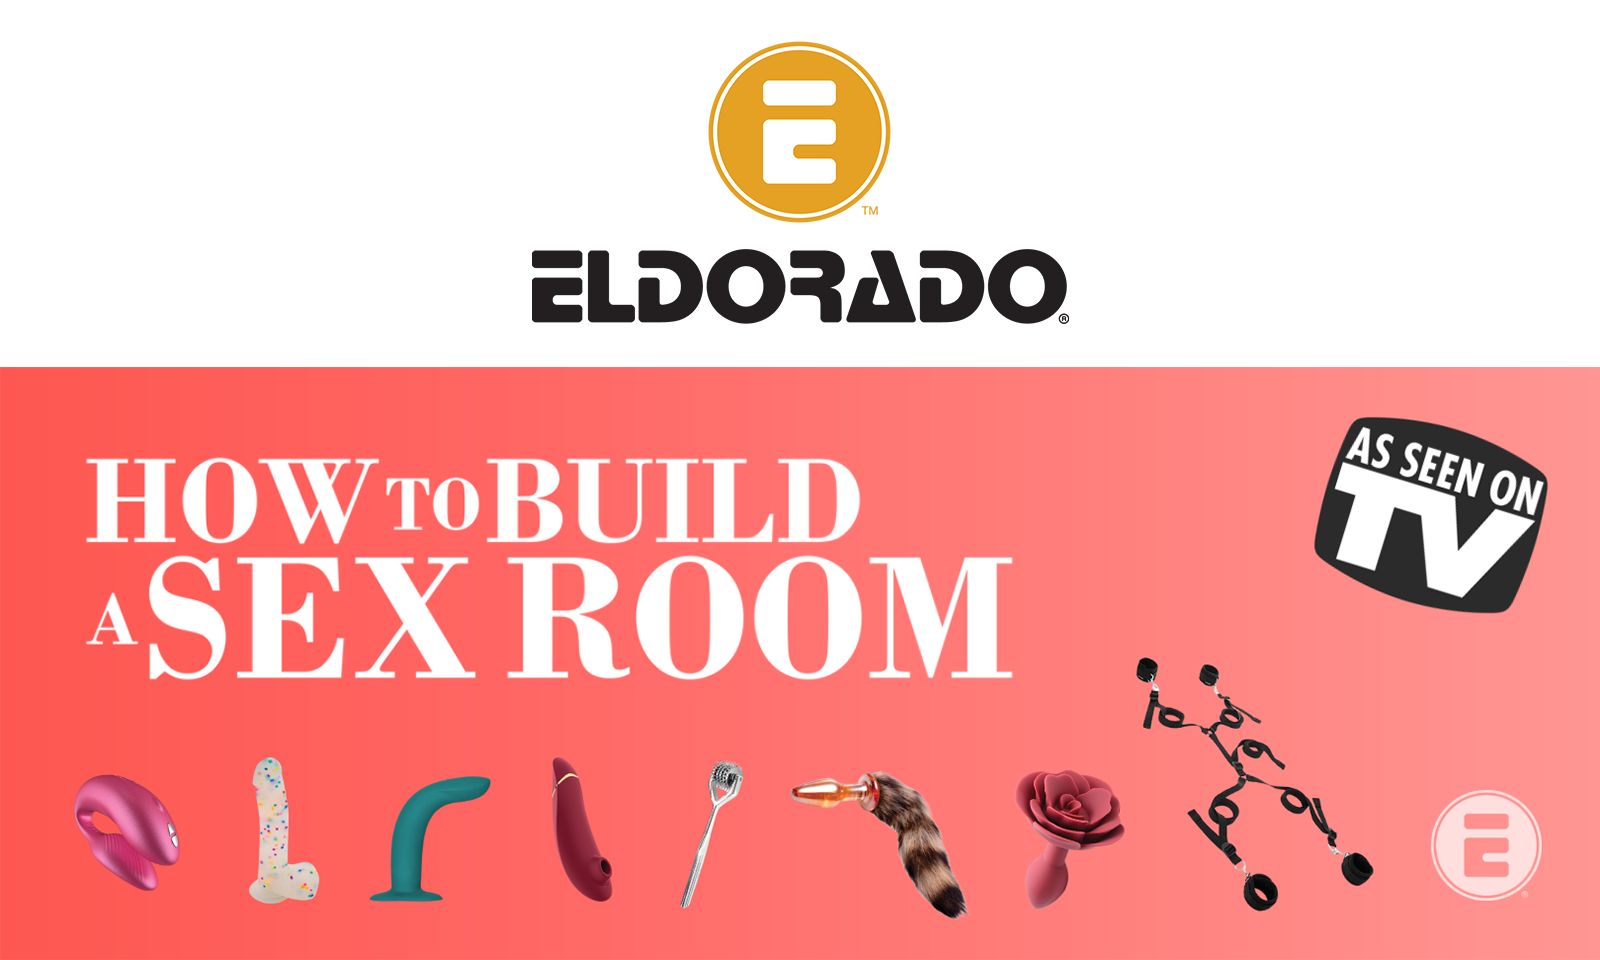 Eldorado Offers Sex Room Digital Catalog Inspired by Netflix Show